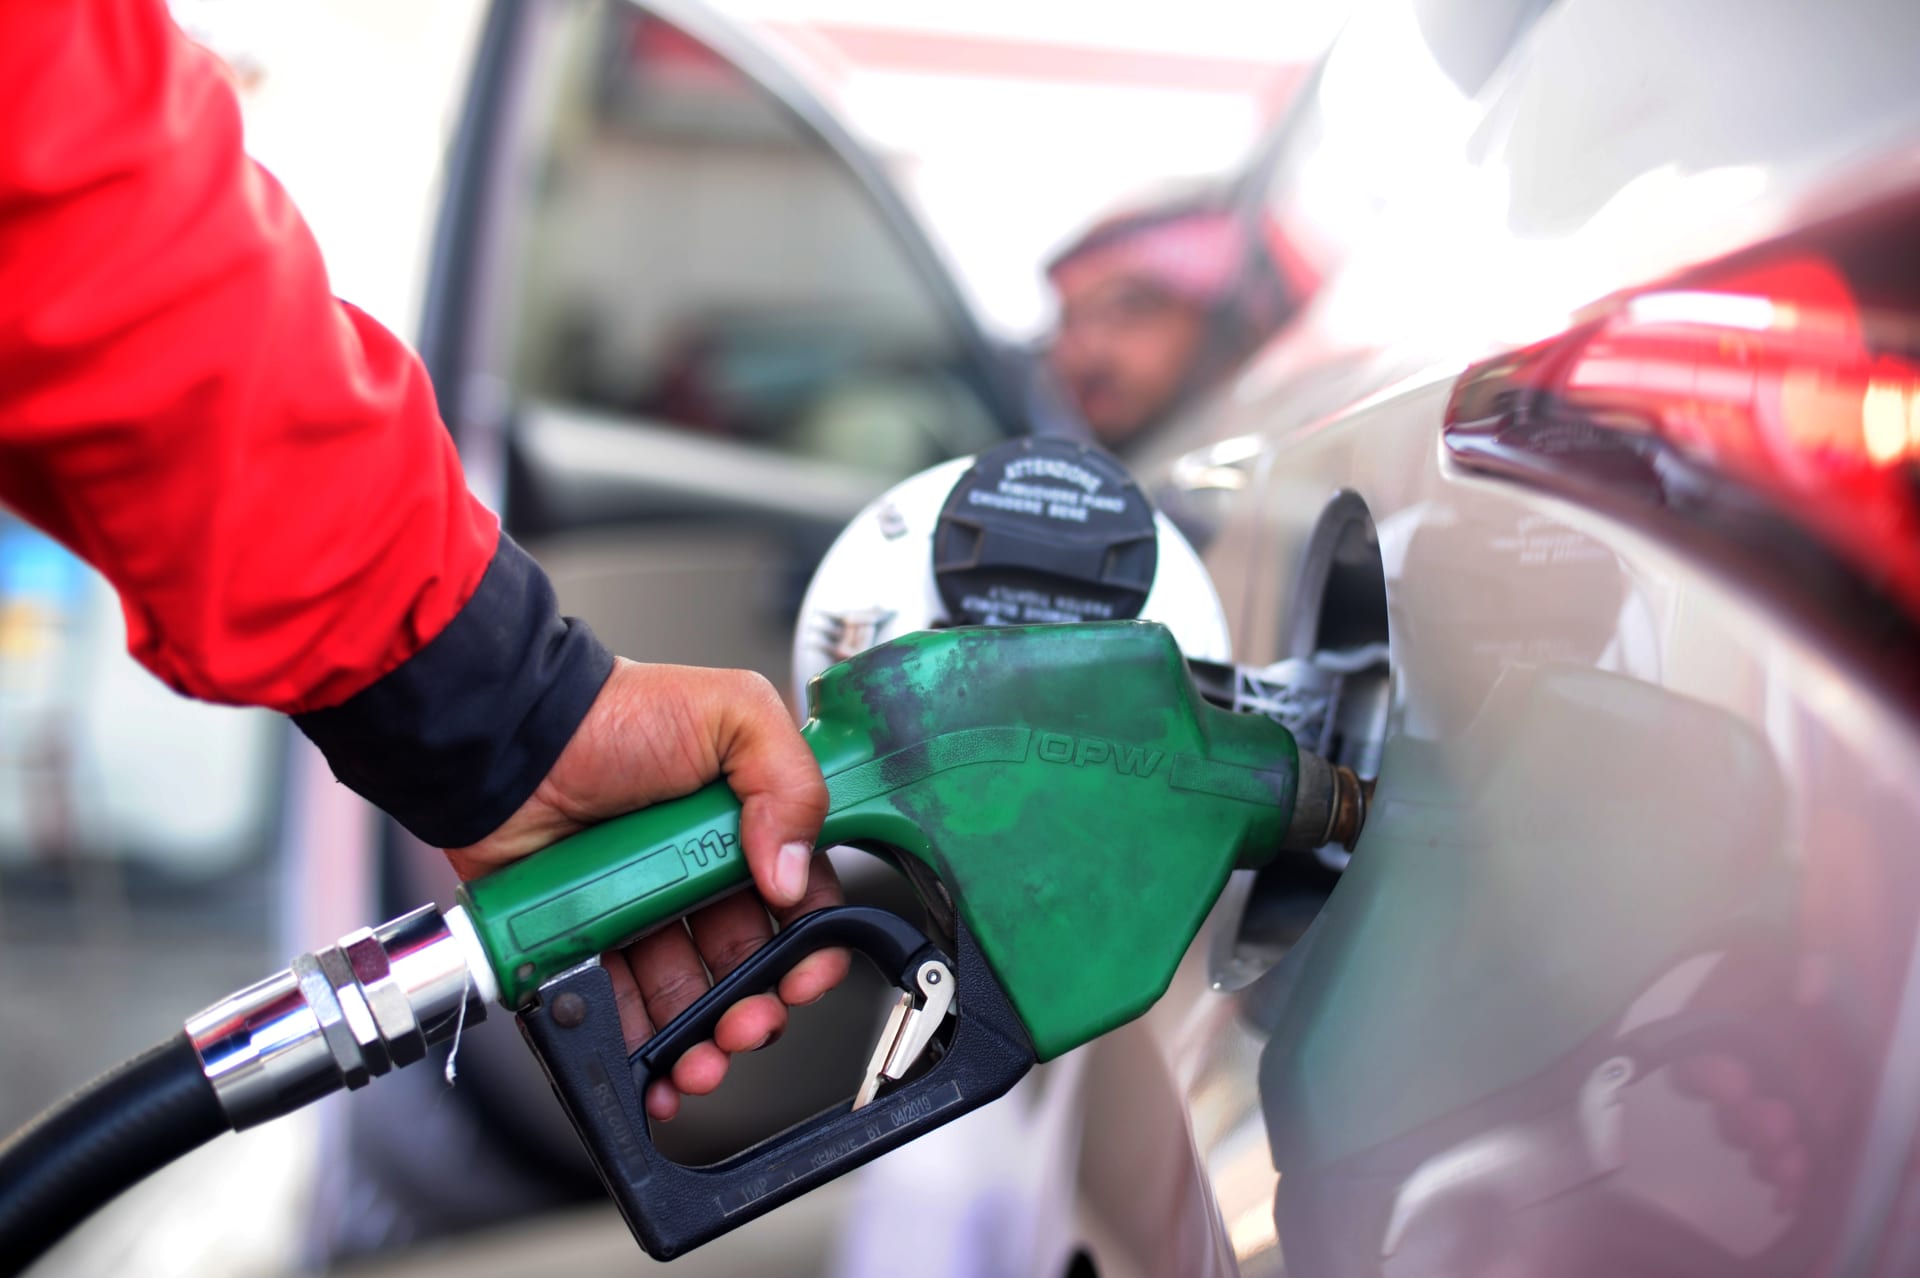 اسعار البنزين فى السعودية لشهر ابريل 2021 الجديدة لمتابعة اسعار بنزين 91 و95 فى شهر رمضان بعد تحديث ارامكو